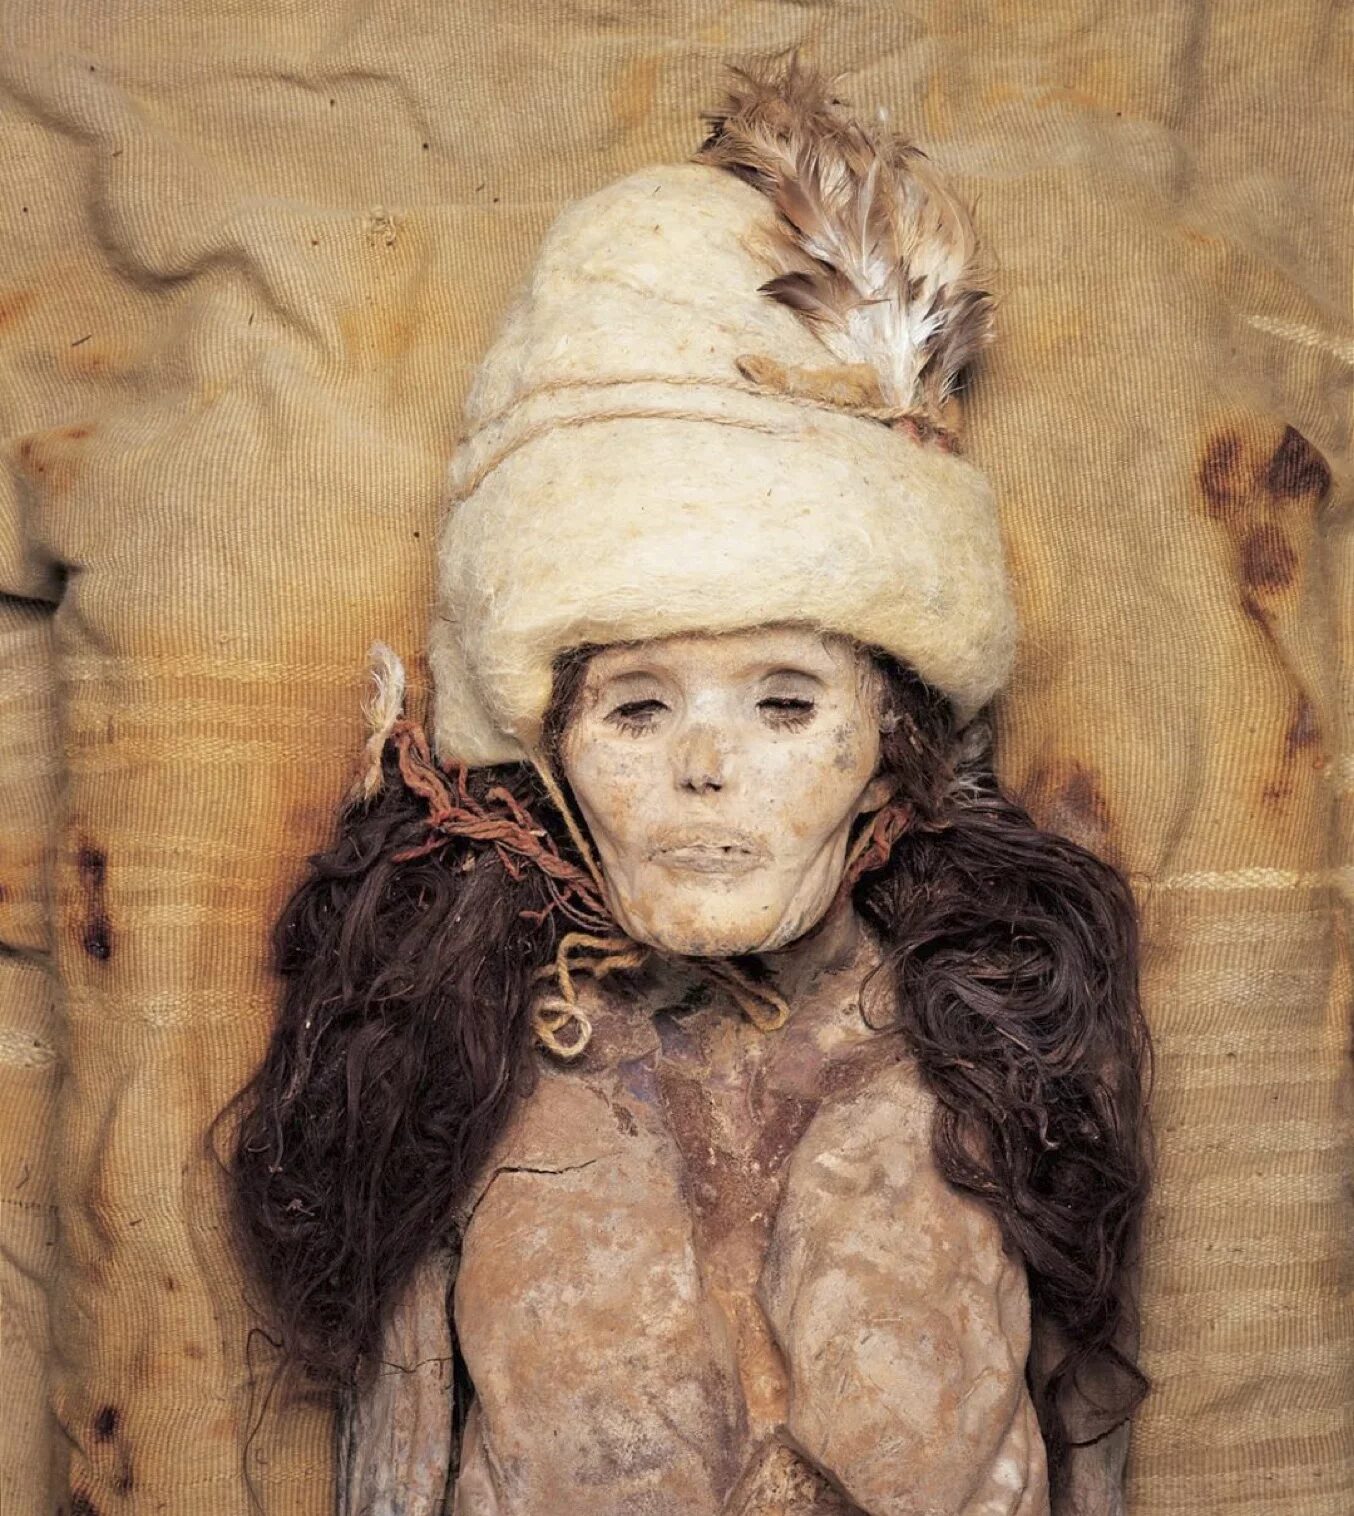 mummified woman